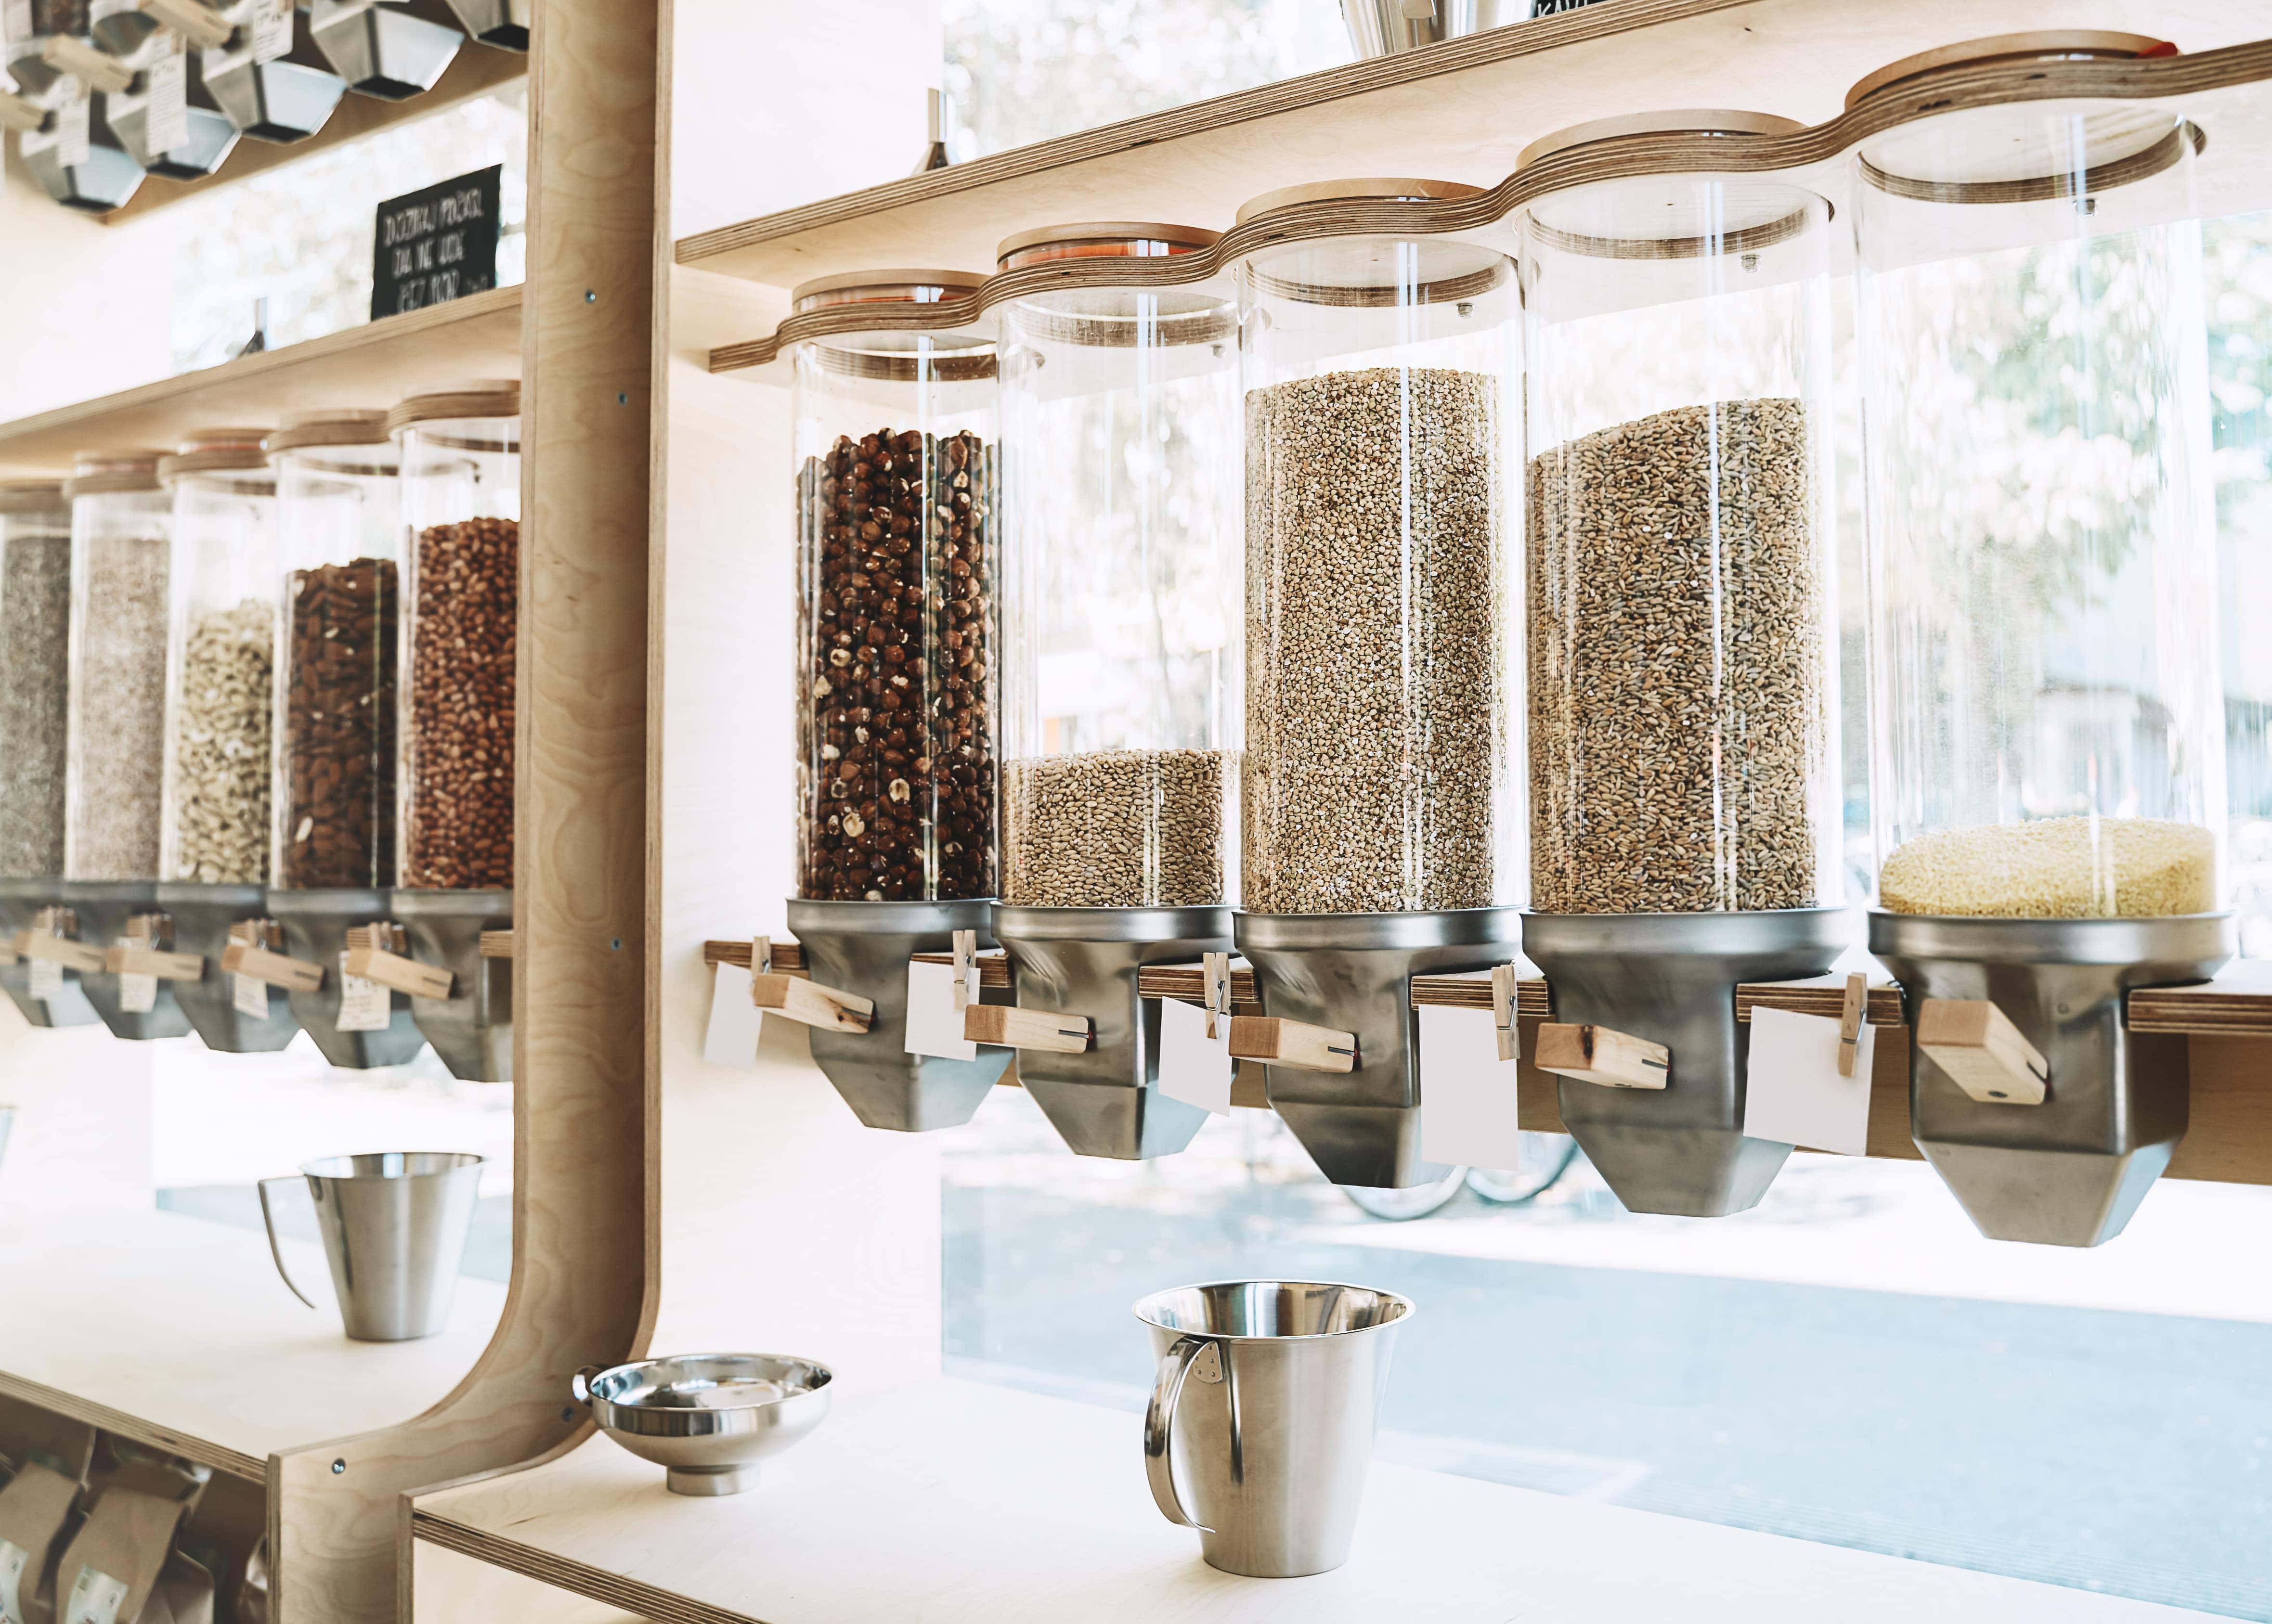 Glasbehälter gefüllt mit Reis, Linsen, Mehl und anderen trockenen Lebensmitteln zum selbst abfüllen - möglich im Unverpacktladen Kleine Freiheit in Klagenfurt